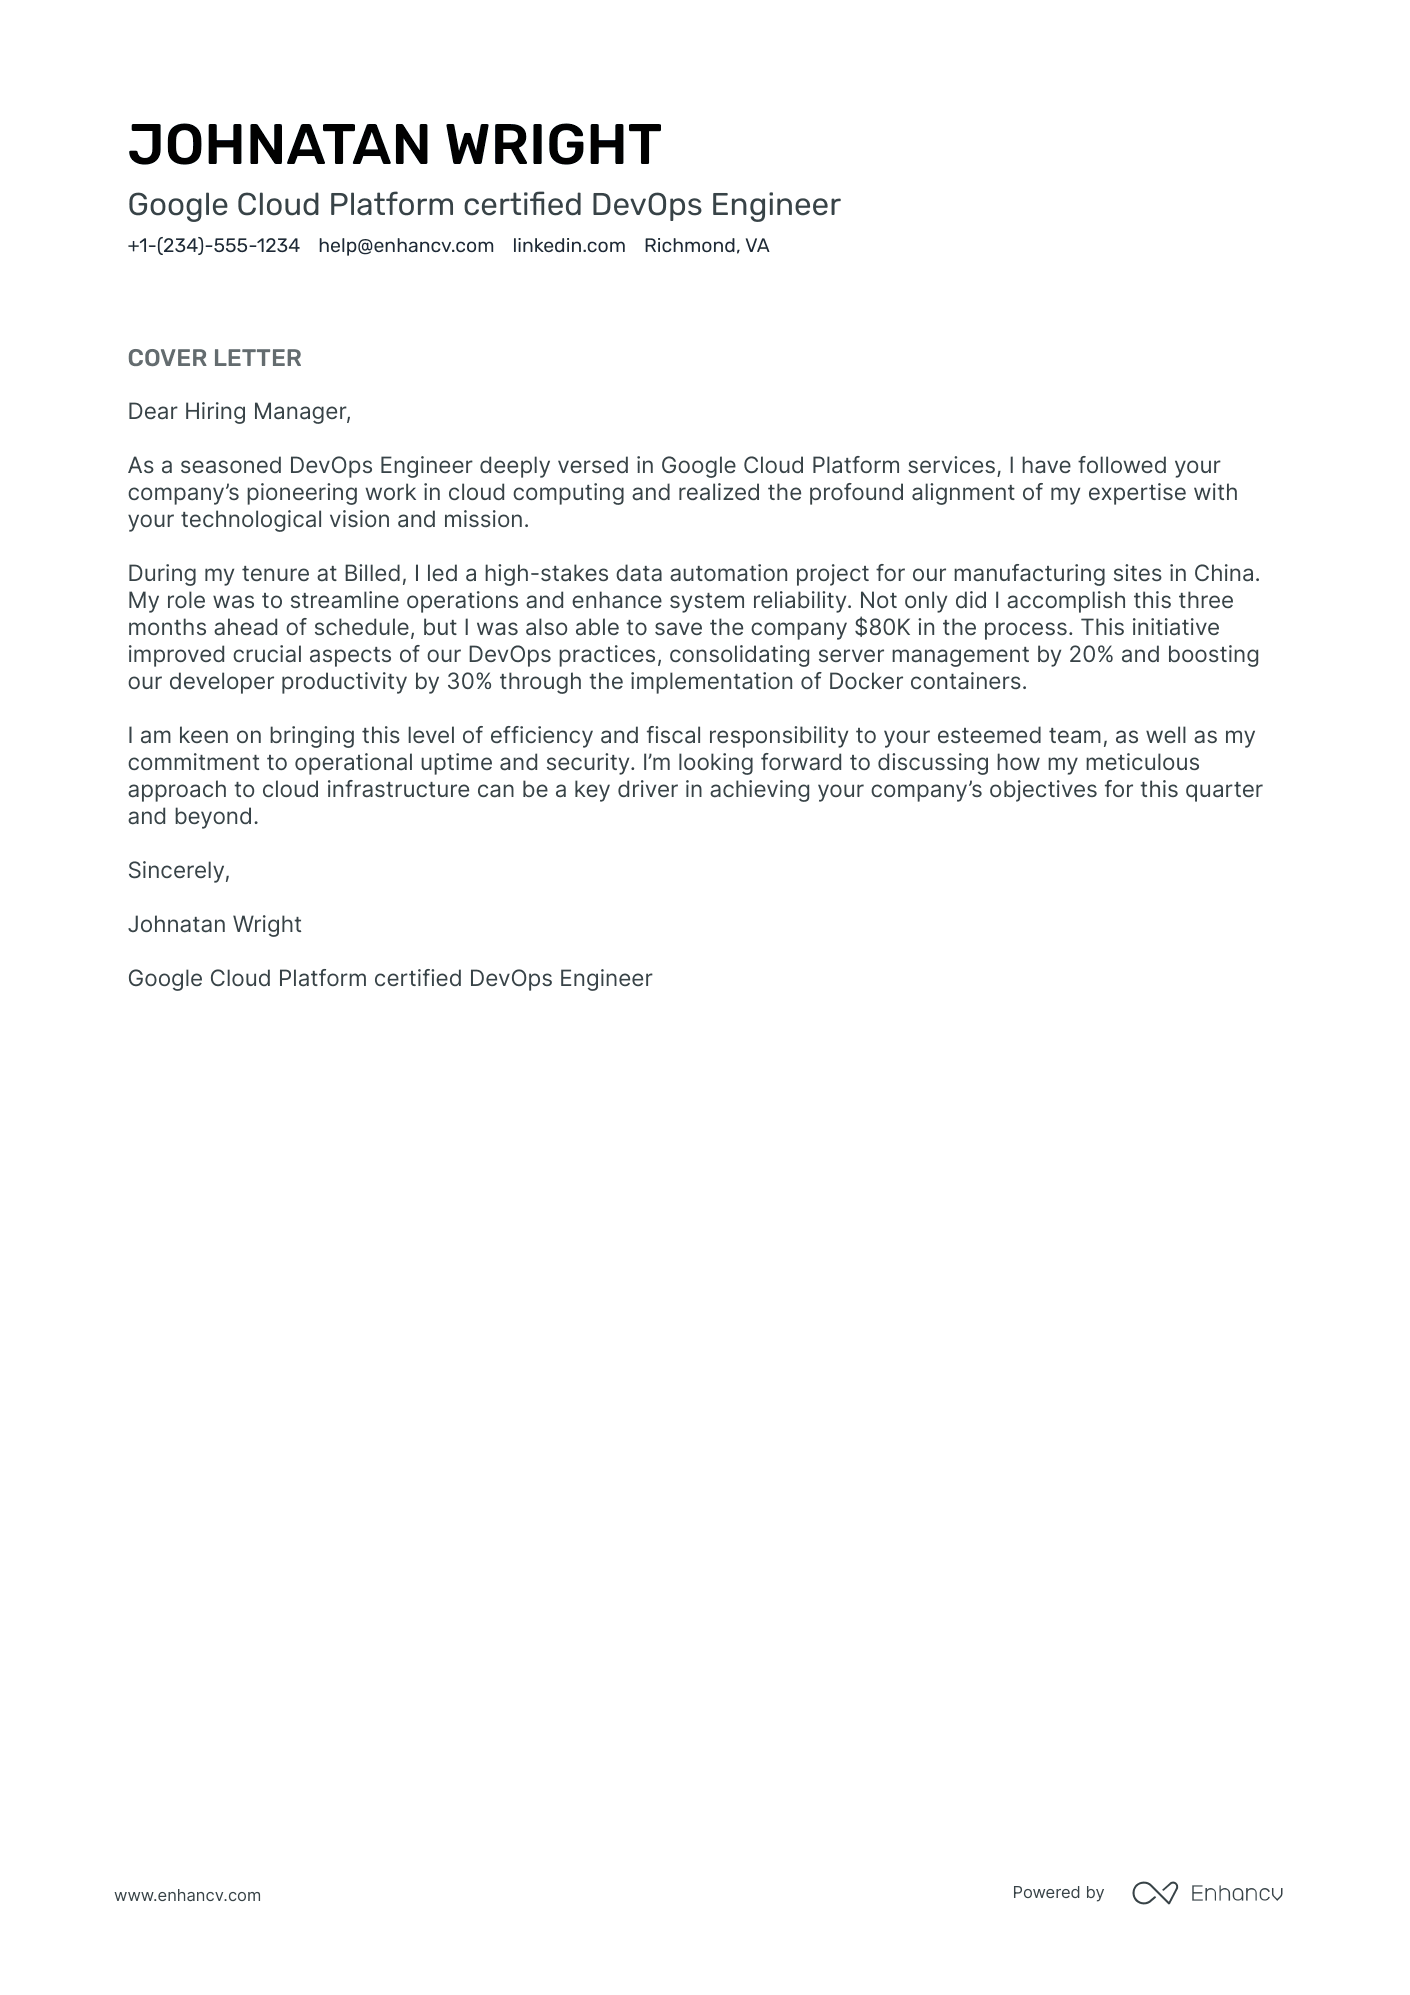 Devops Engineer cover letter